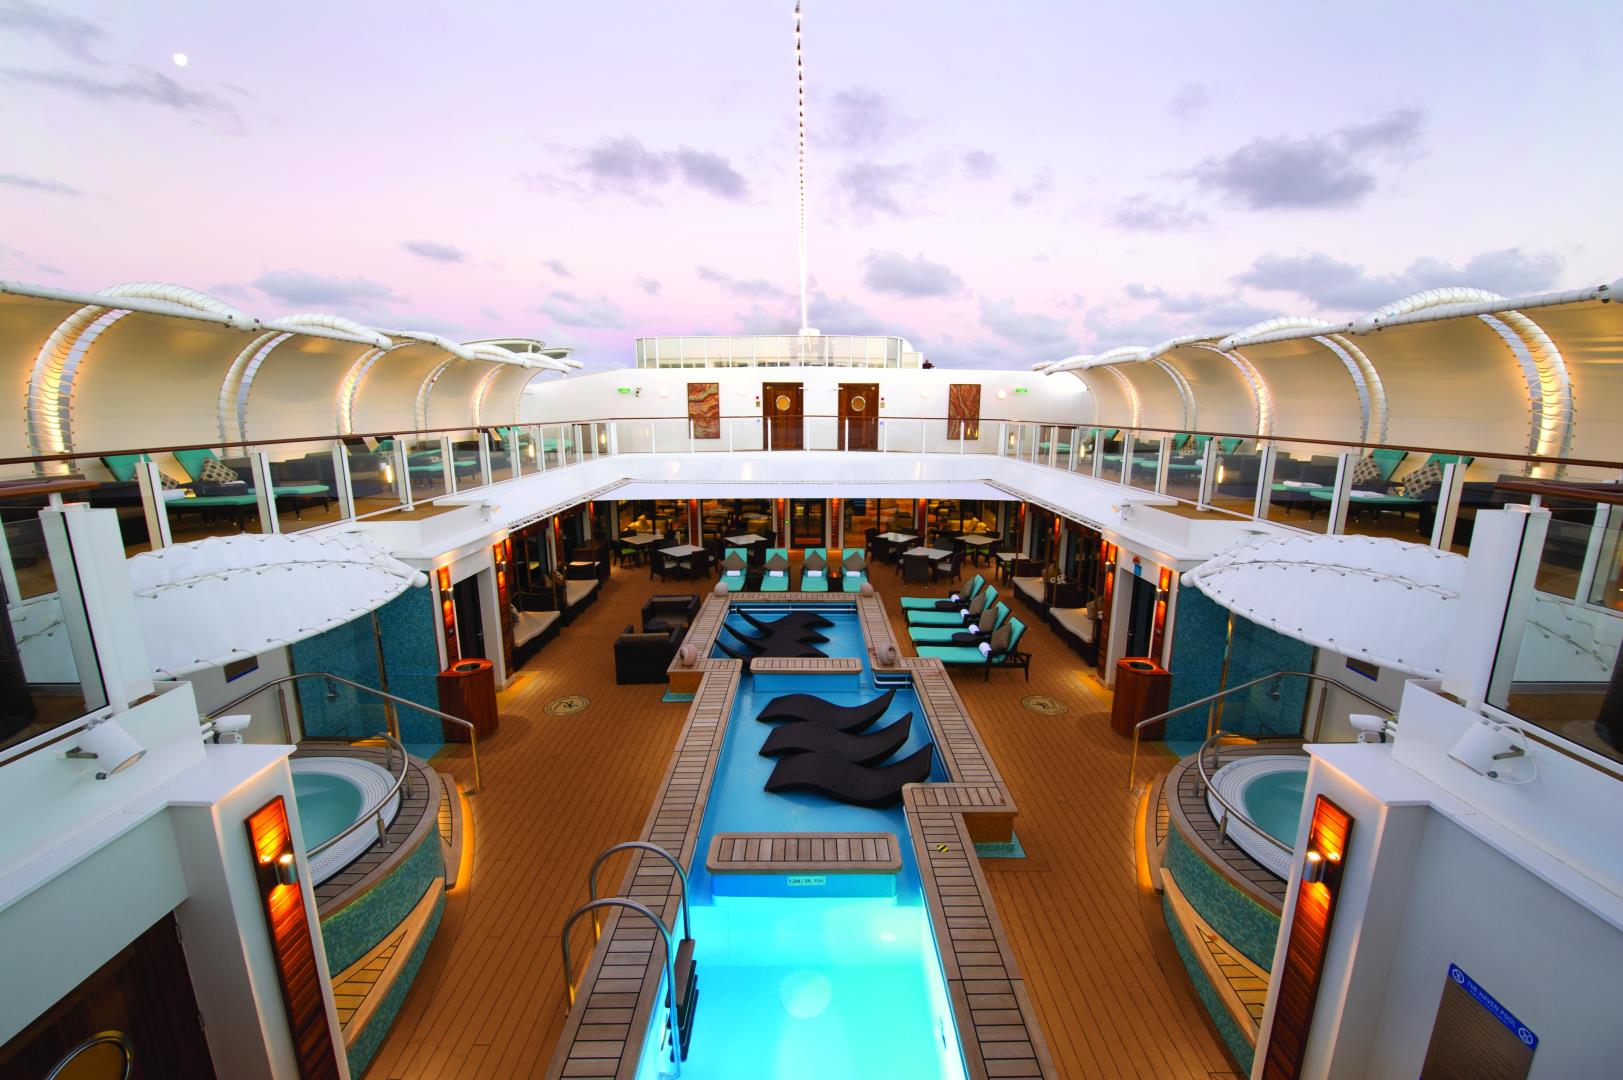 5-day Cruise to Bermuda from New York, New York on Norwegian Getaway